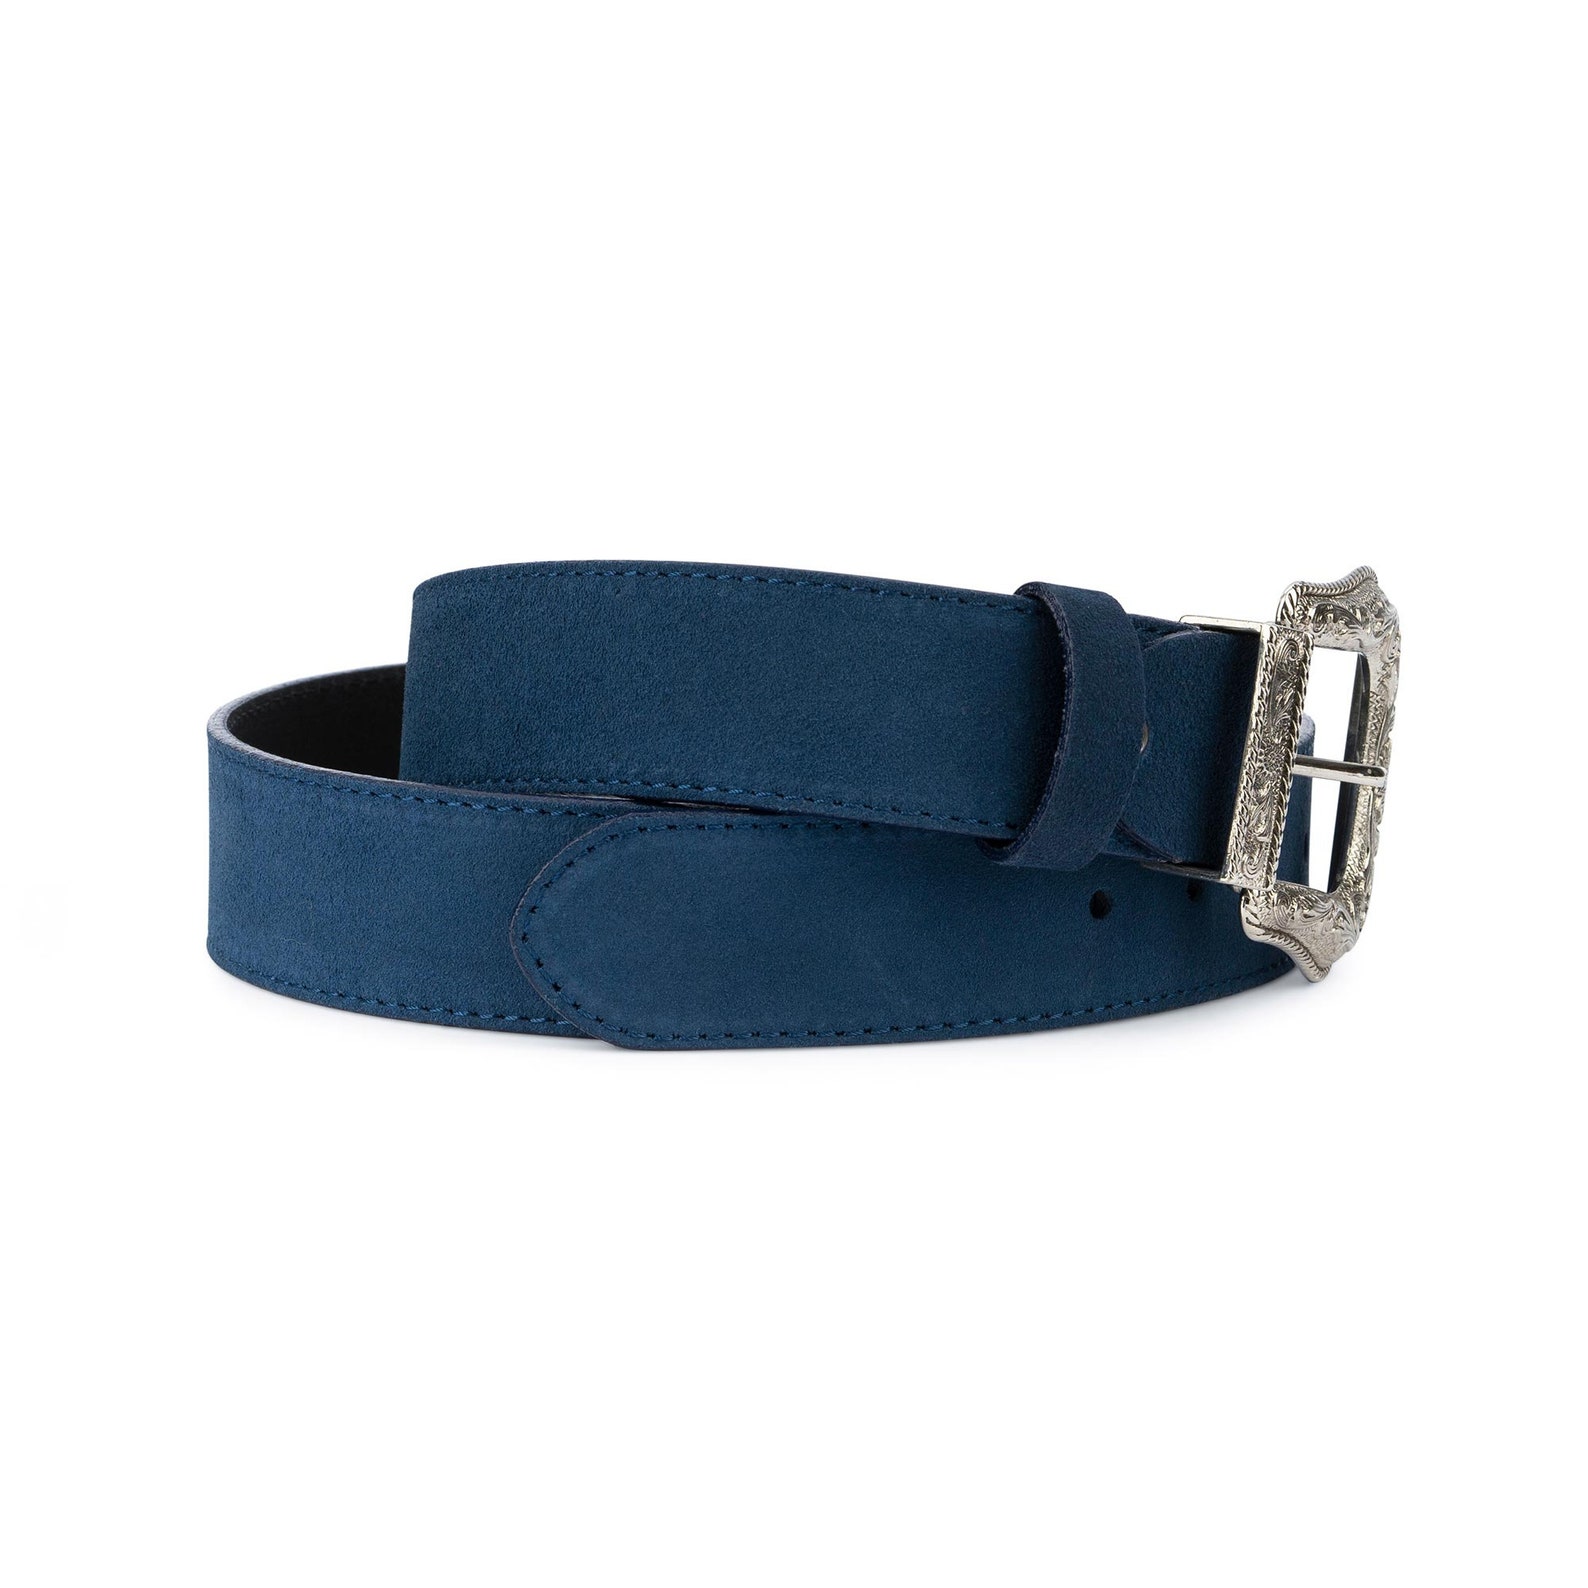 Western belt Mens belts for jeans Cowboy belts Genuine leather | Etsy